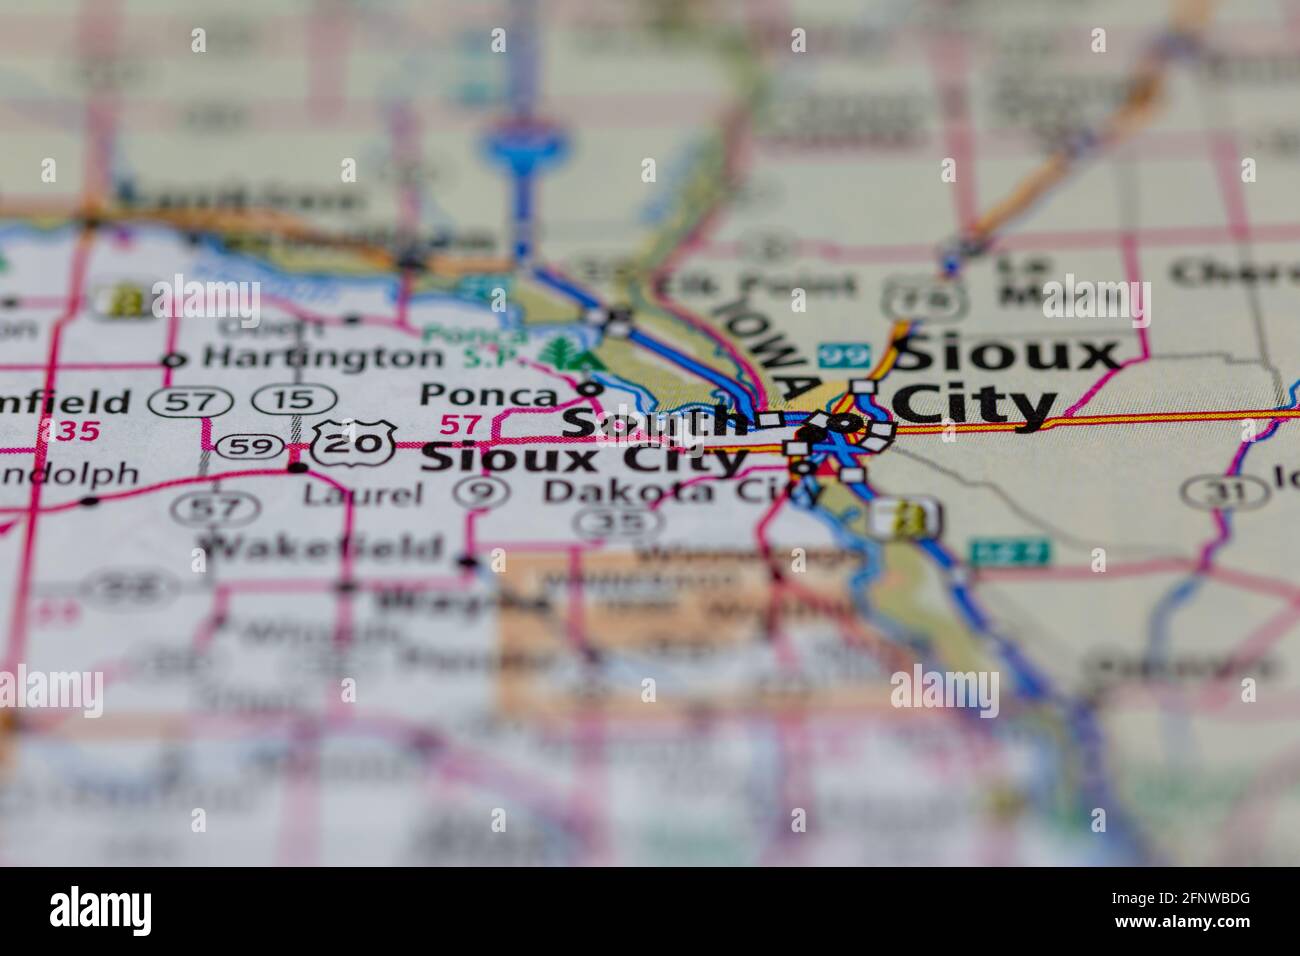 South Sioux City Nebraska USA montré sur une carte de géographie Ou carte routière Banque D'Images